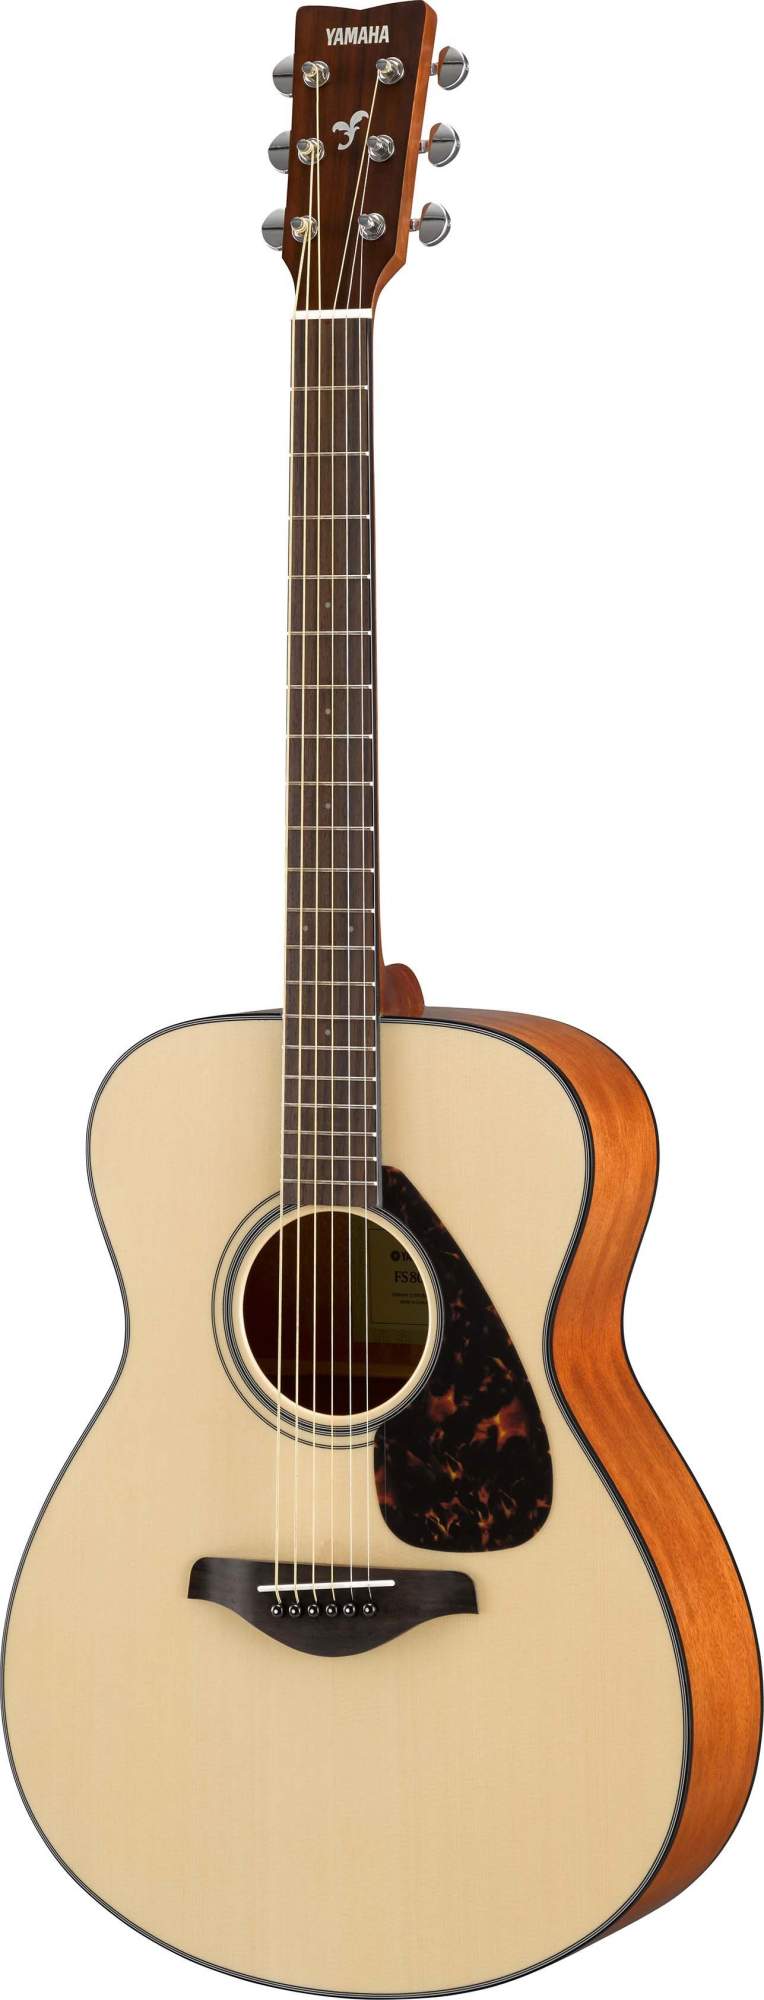 Акустическая гитара Yamaha FS800 N - купить в CENAM.NET (Москва), цена на Мегамаркет